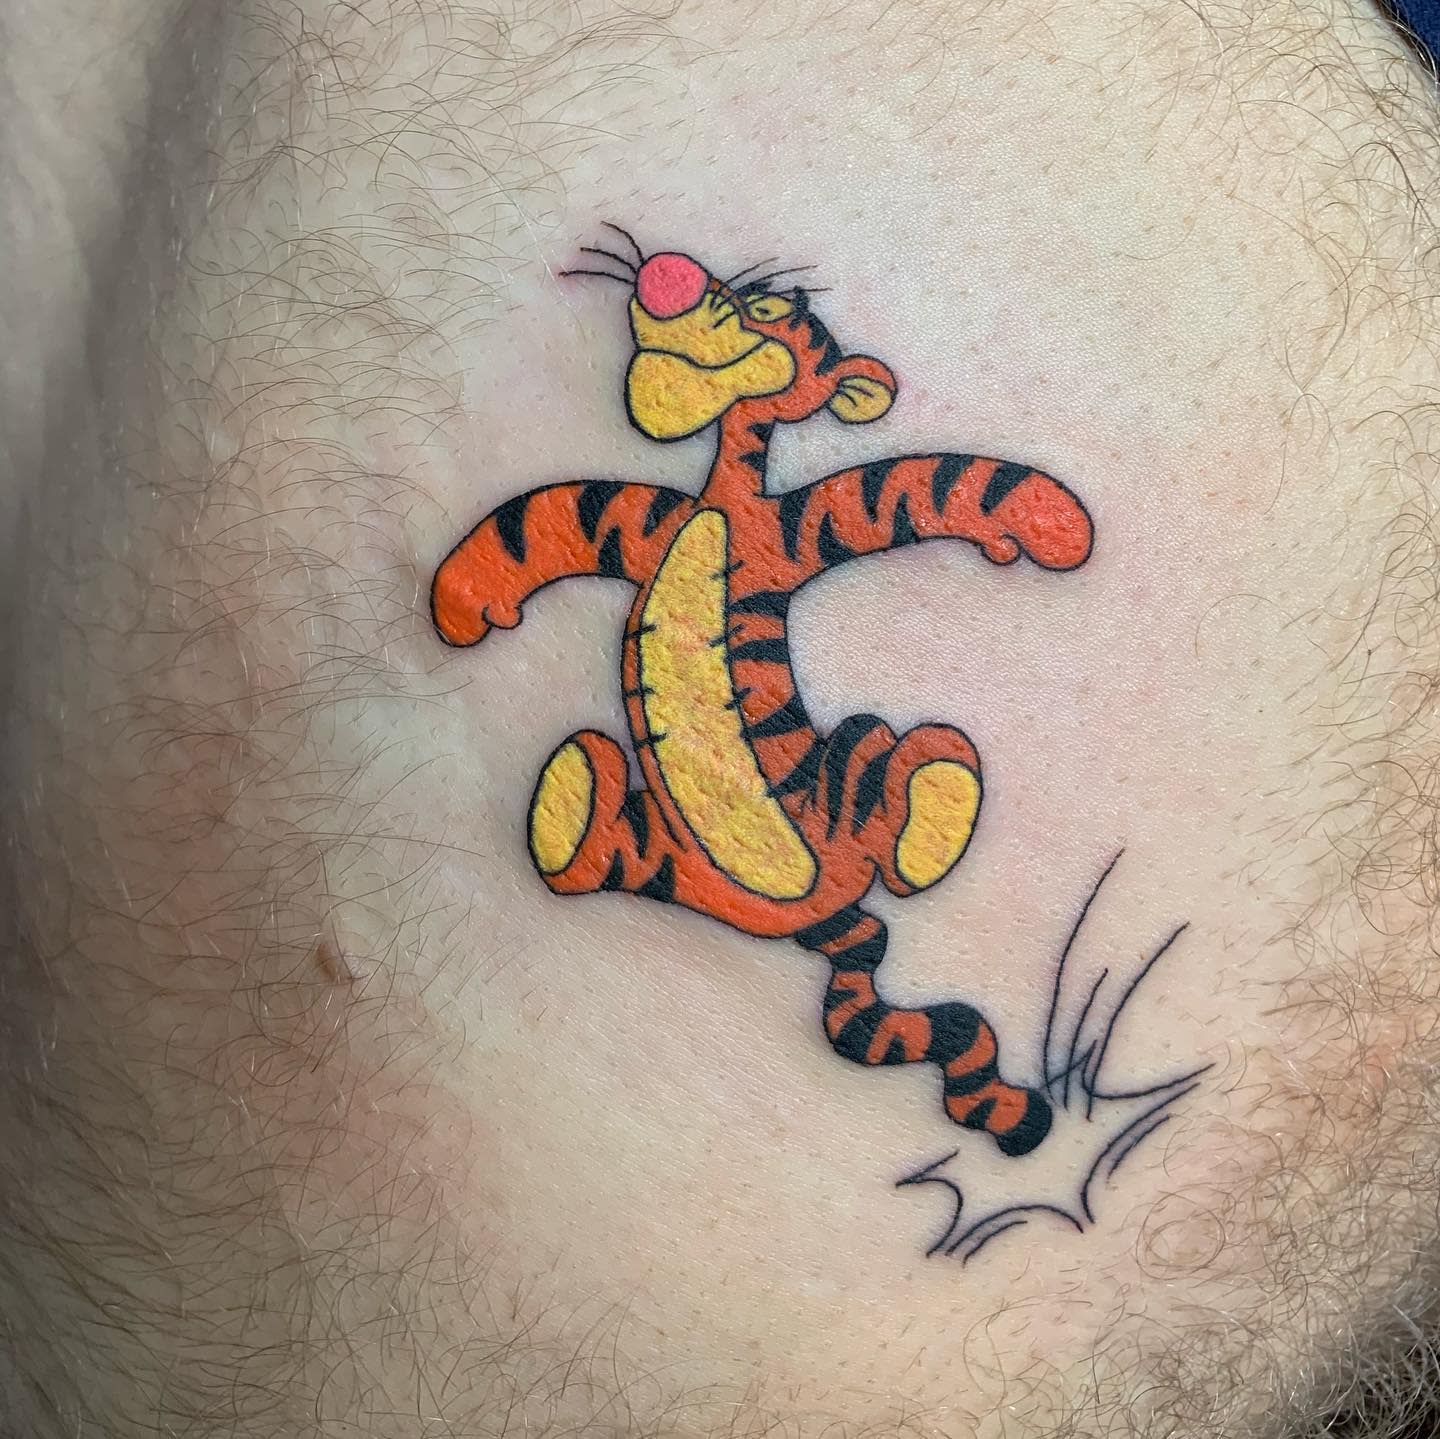 Tatuaje Tigger Winnie the Pooh -yvetteyvelle